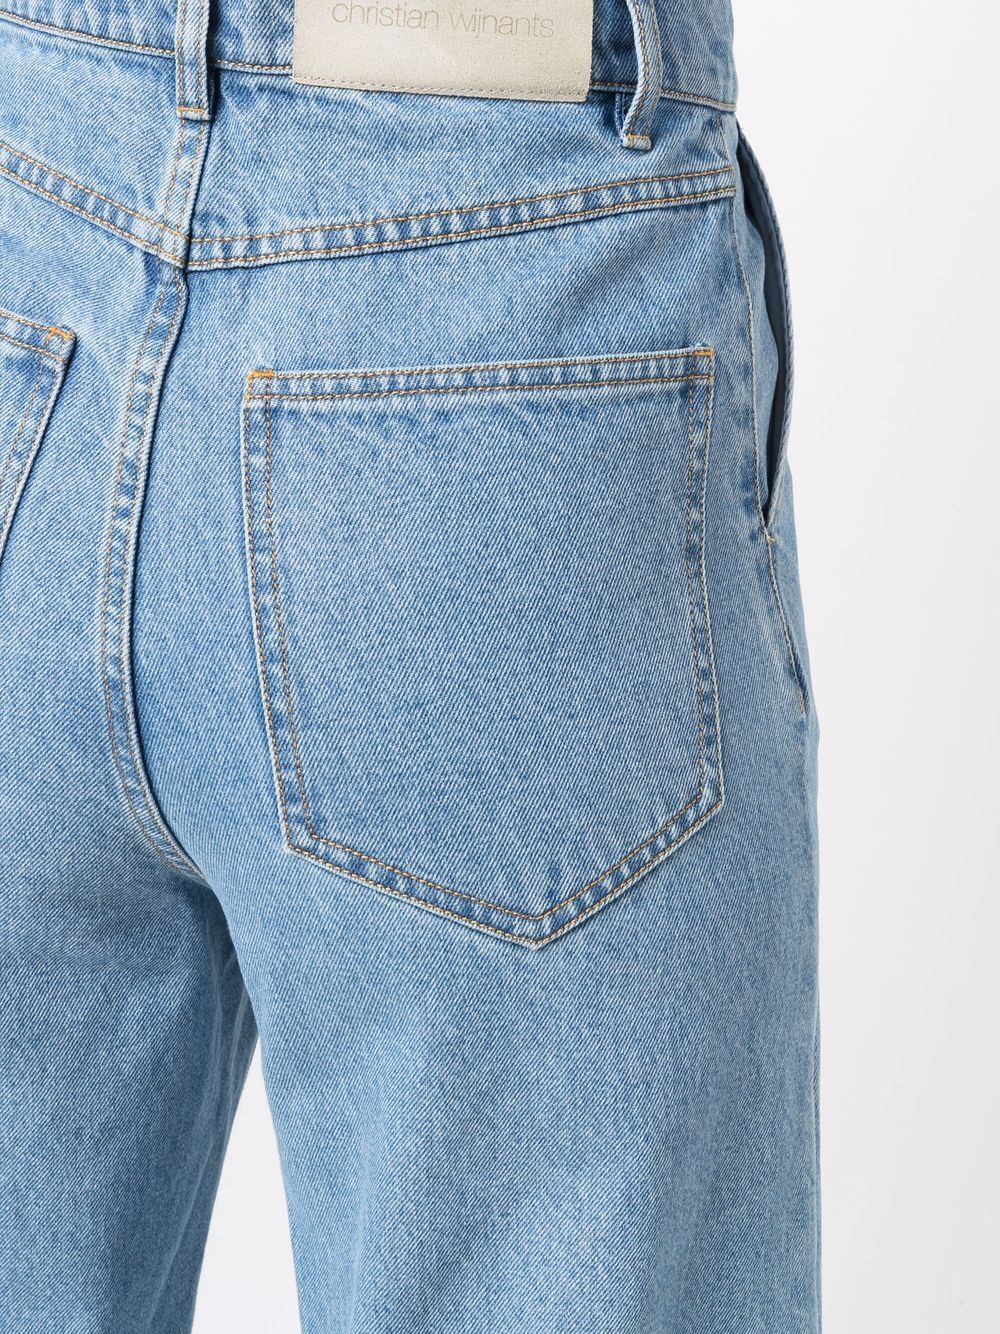 фото Christian wijnants широкие джинсы pika с завышенной талией